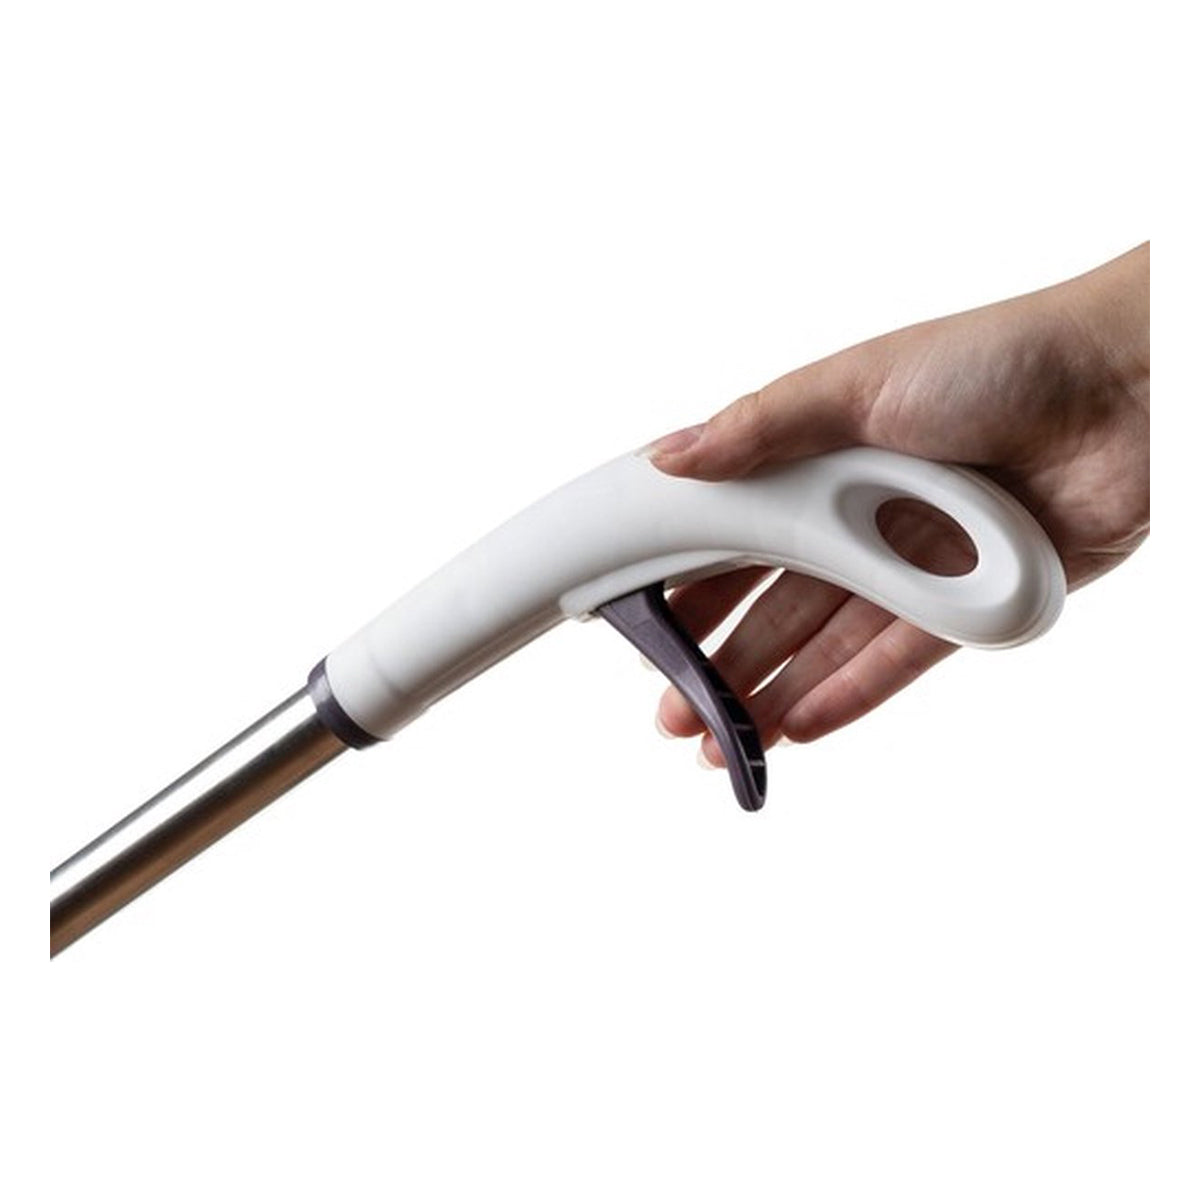 <tc>Ariko</tc>  2-1 Floor wiper and pads - Floor cleaner - Spray mop - Mop stick